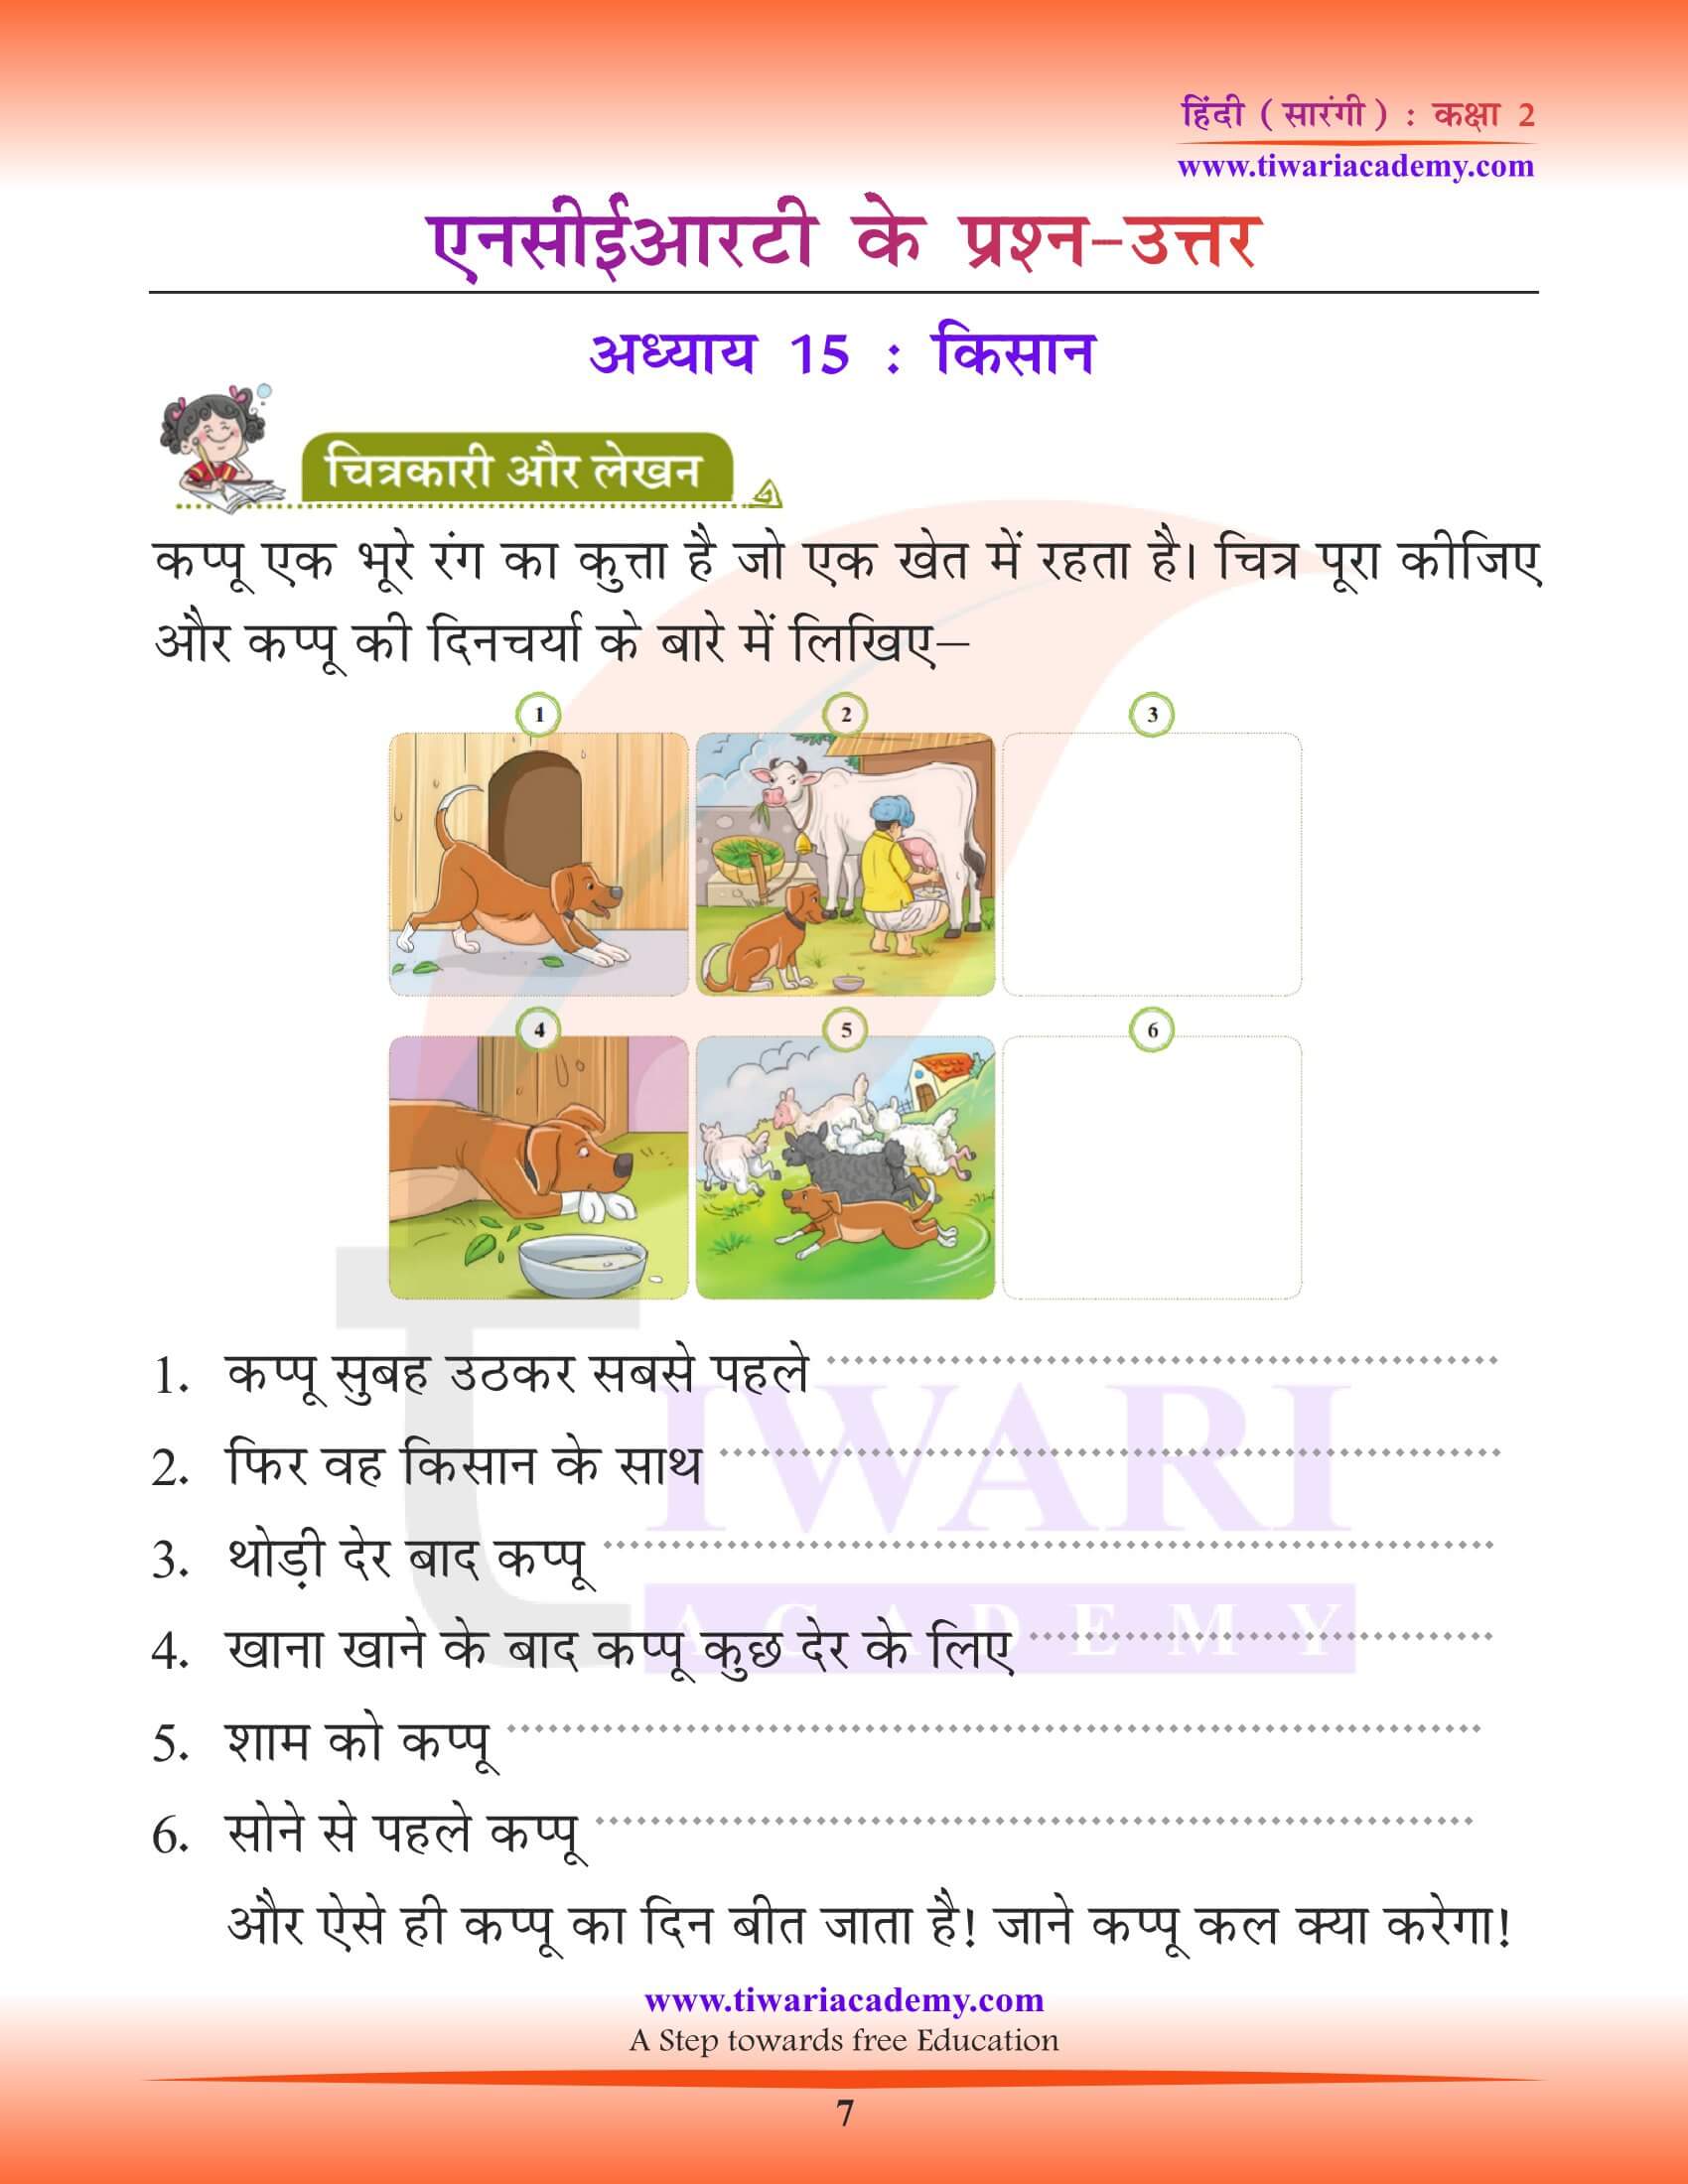 कक्षा 2 हिंदी सारंगी अध्याय 15 की गाइड